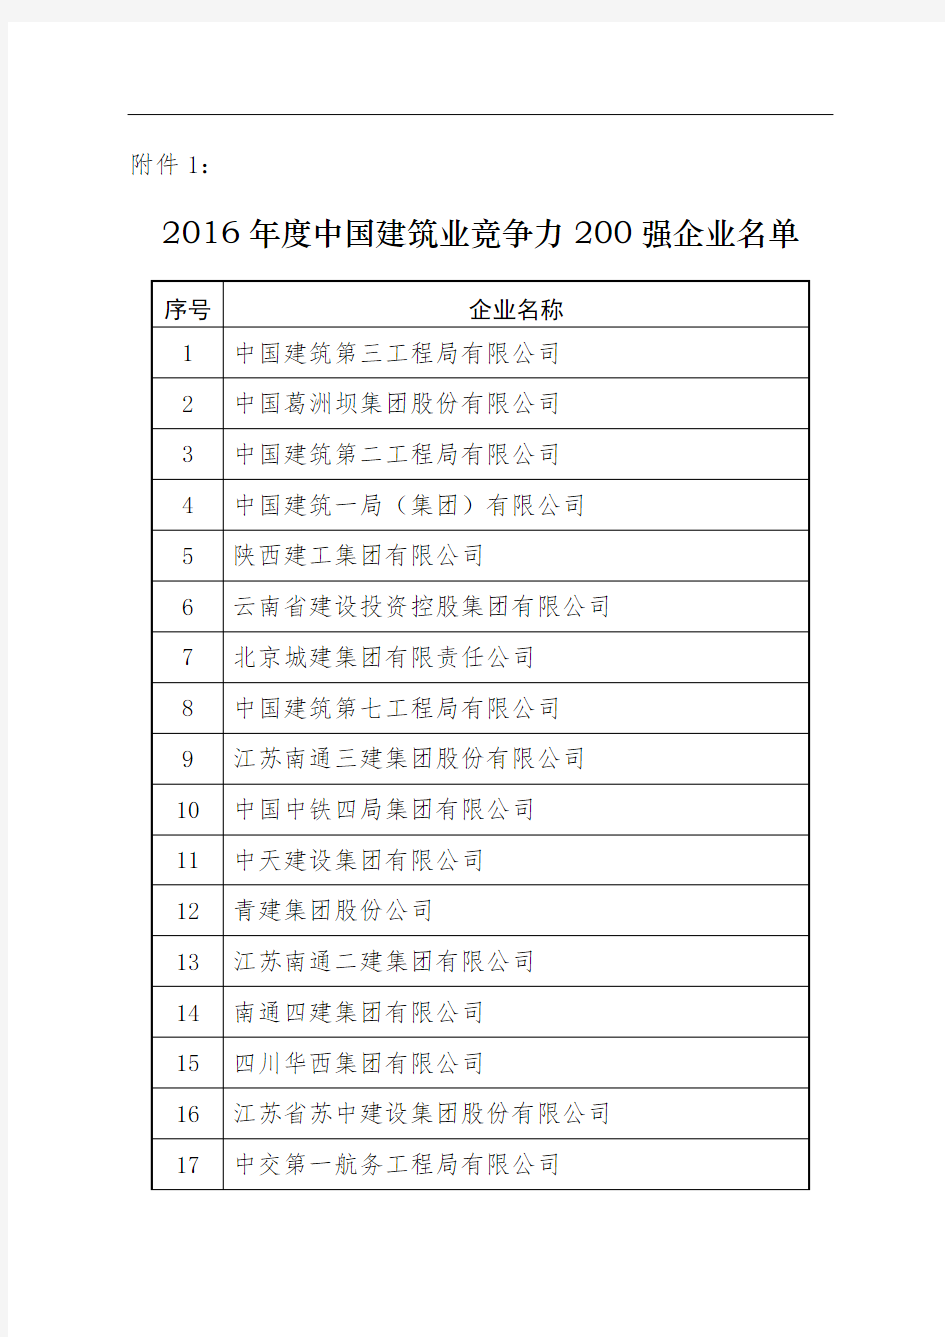 中国建筑业竞争力200强企业名单